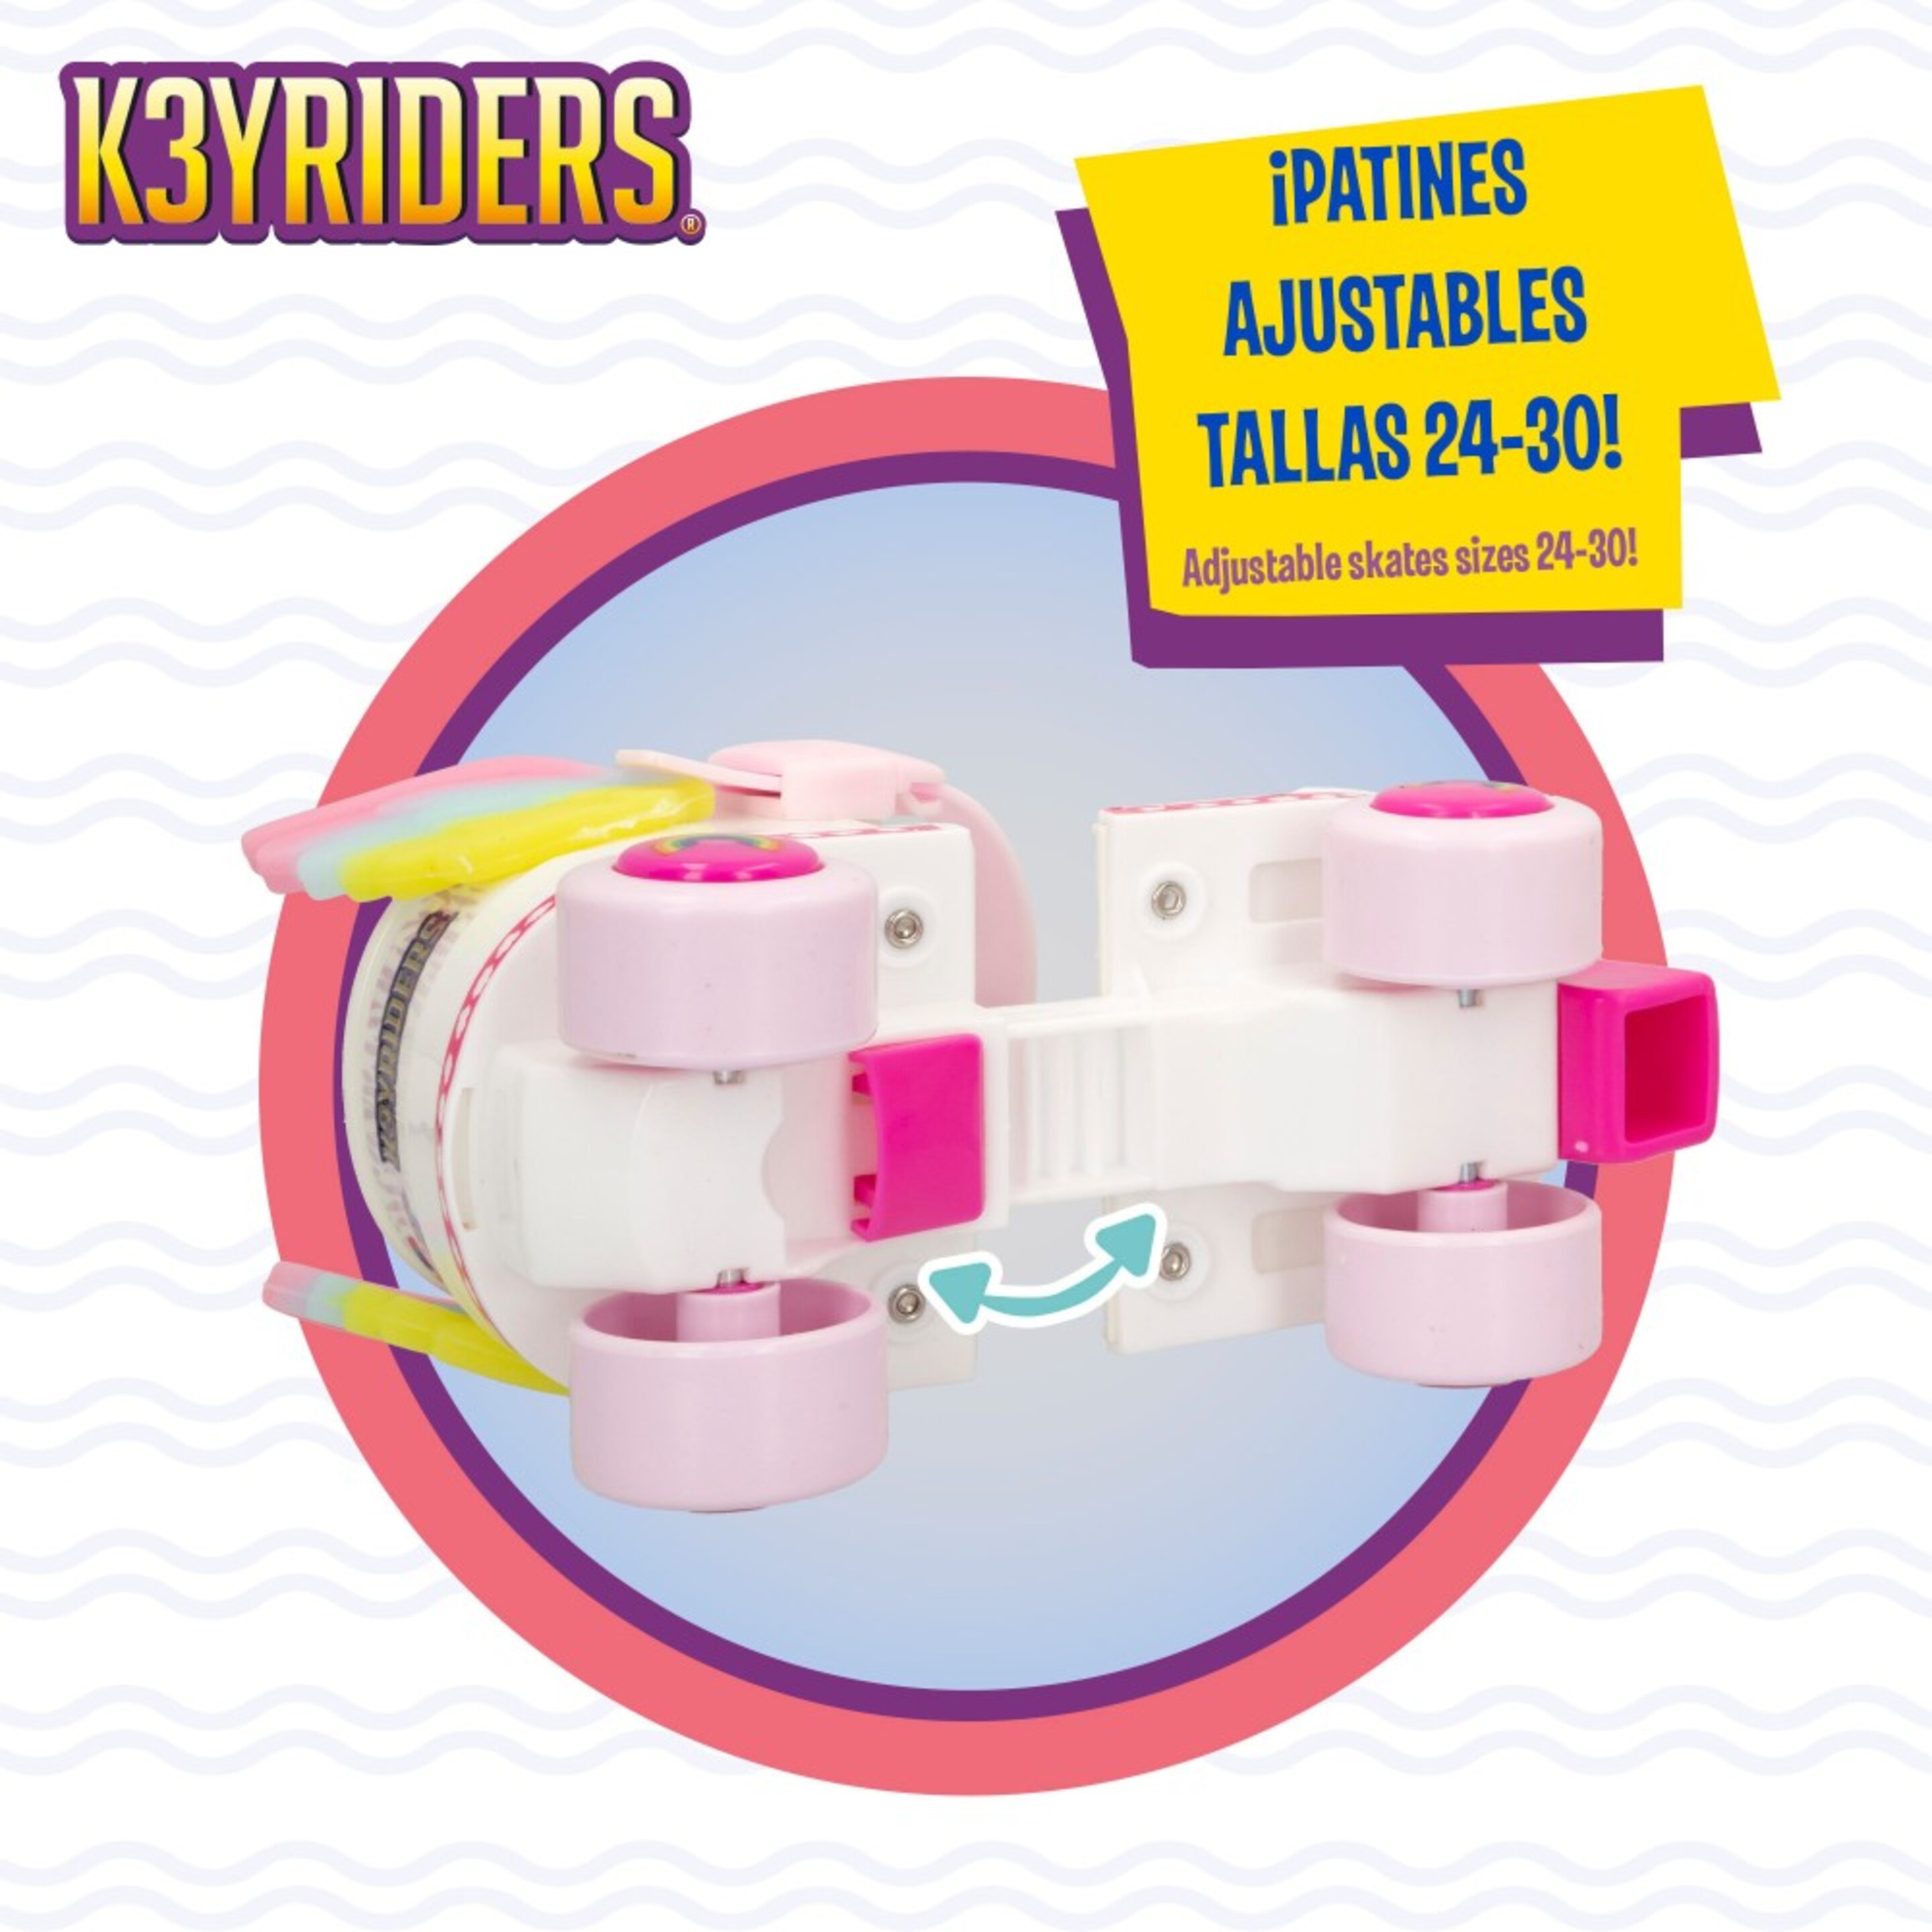 Kit Patines Y Casco De Unicornio 4 Ruedas K3yriders - Multicolor  MKP